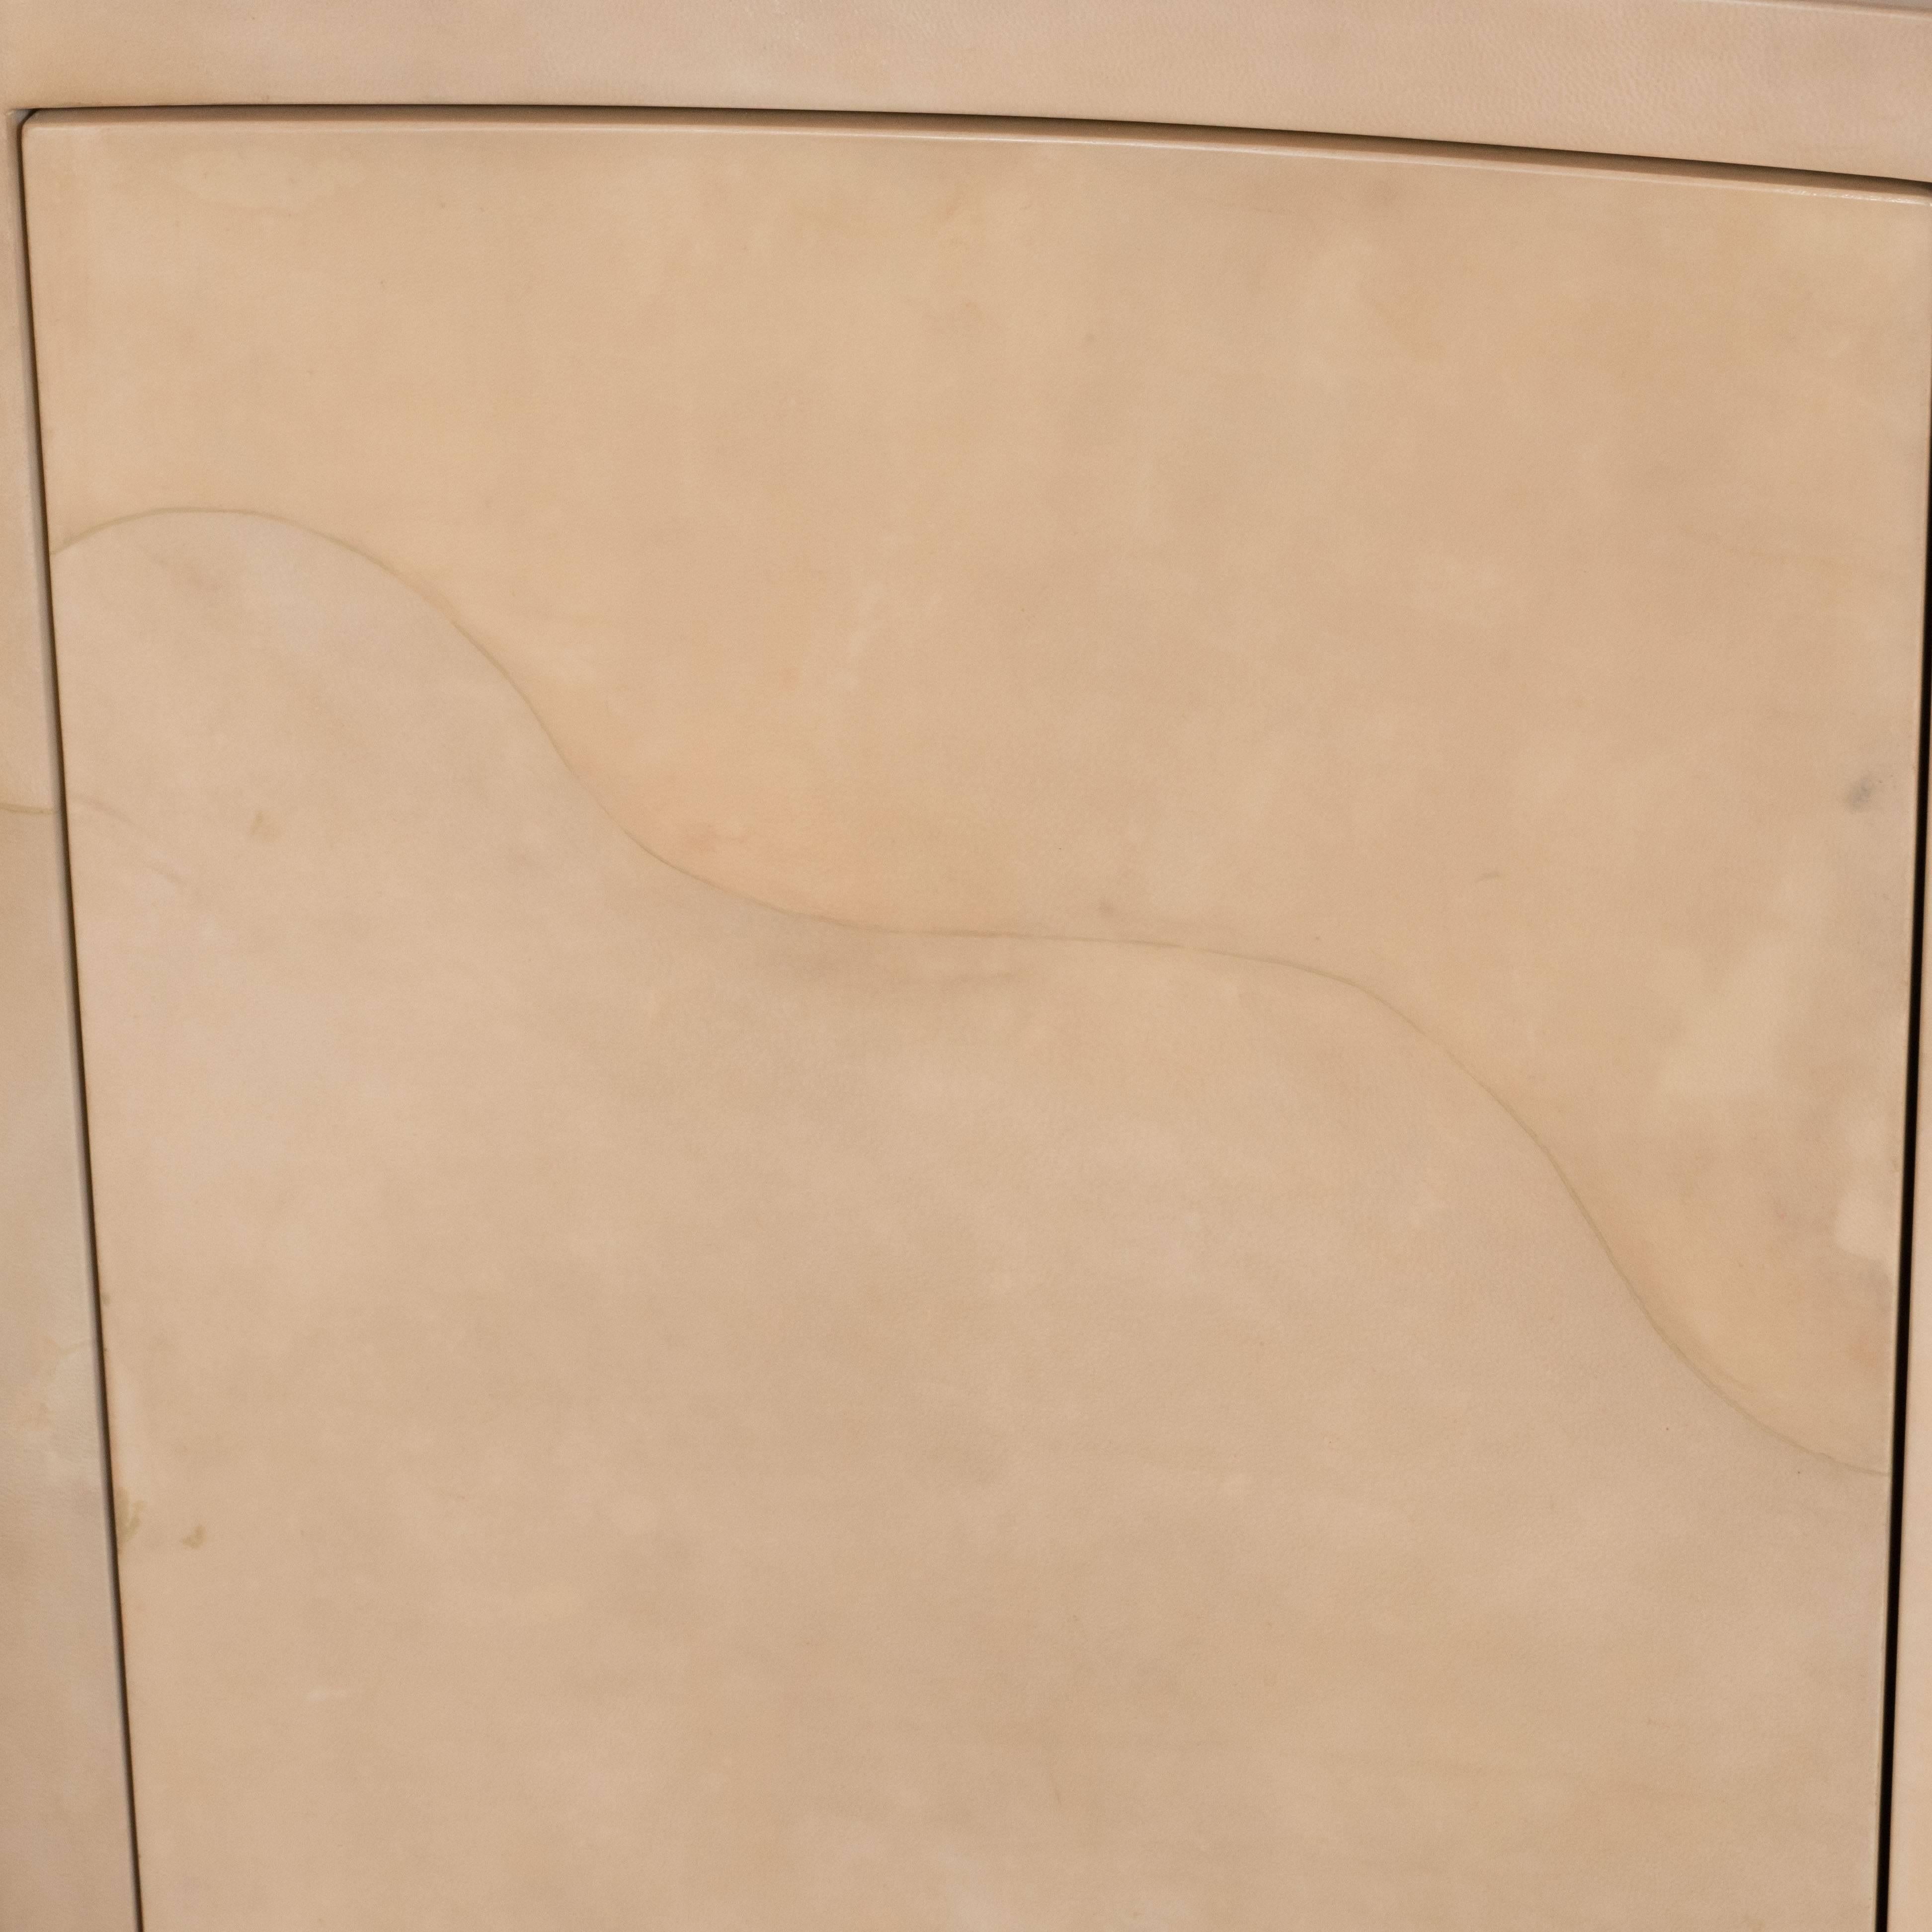 Goatskin Modernist Lacquered Goat Skin Cabinet or Sideboard, Manner of Karl Springer